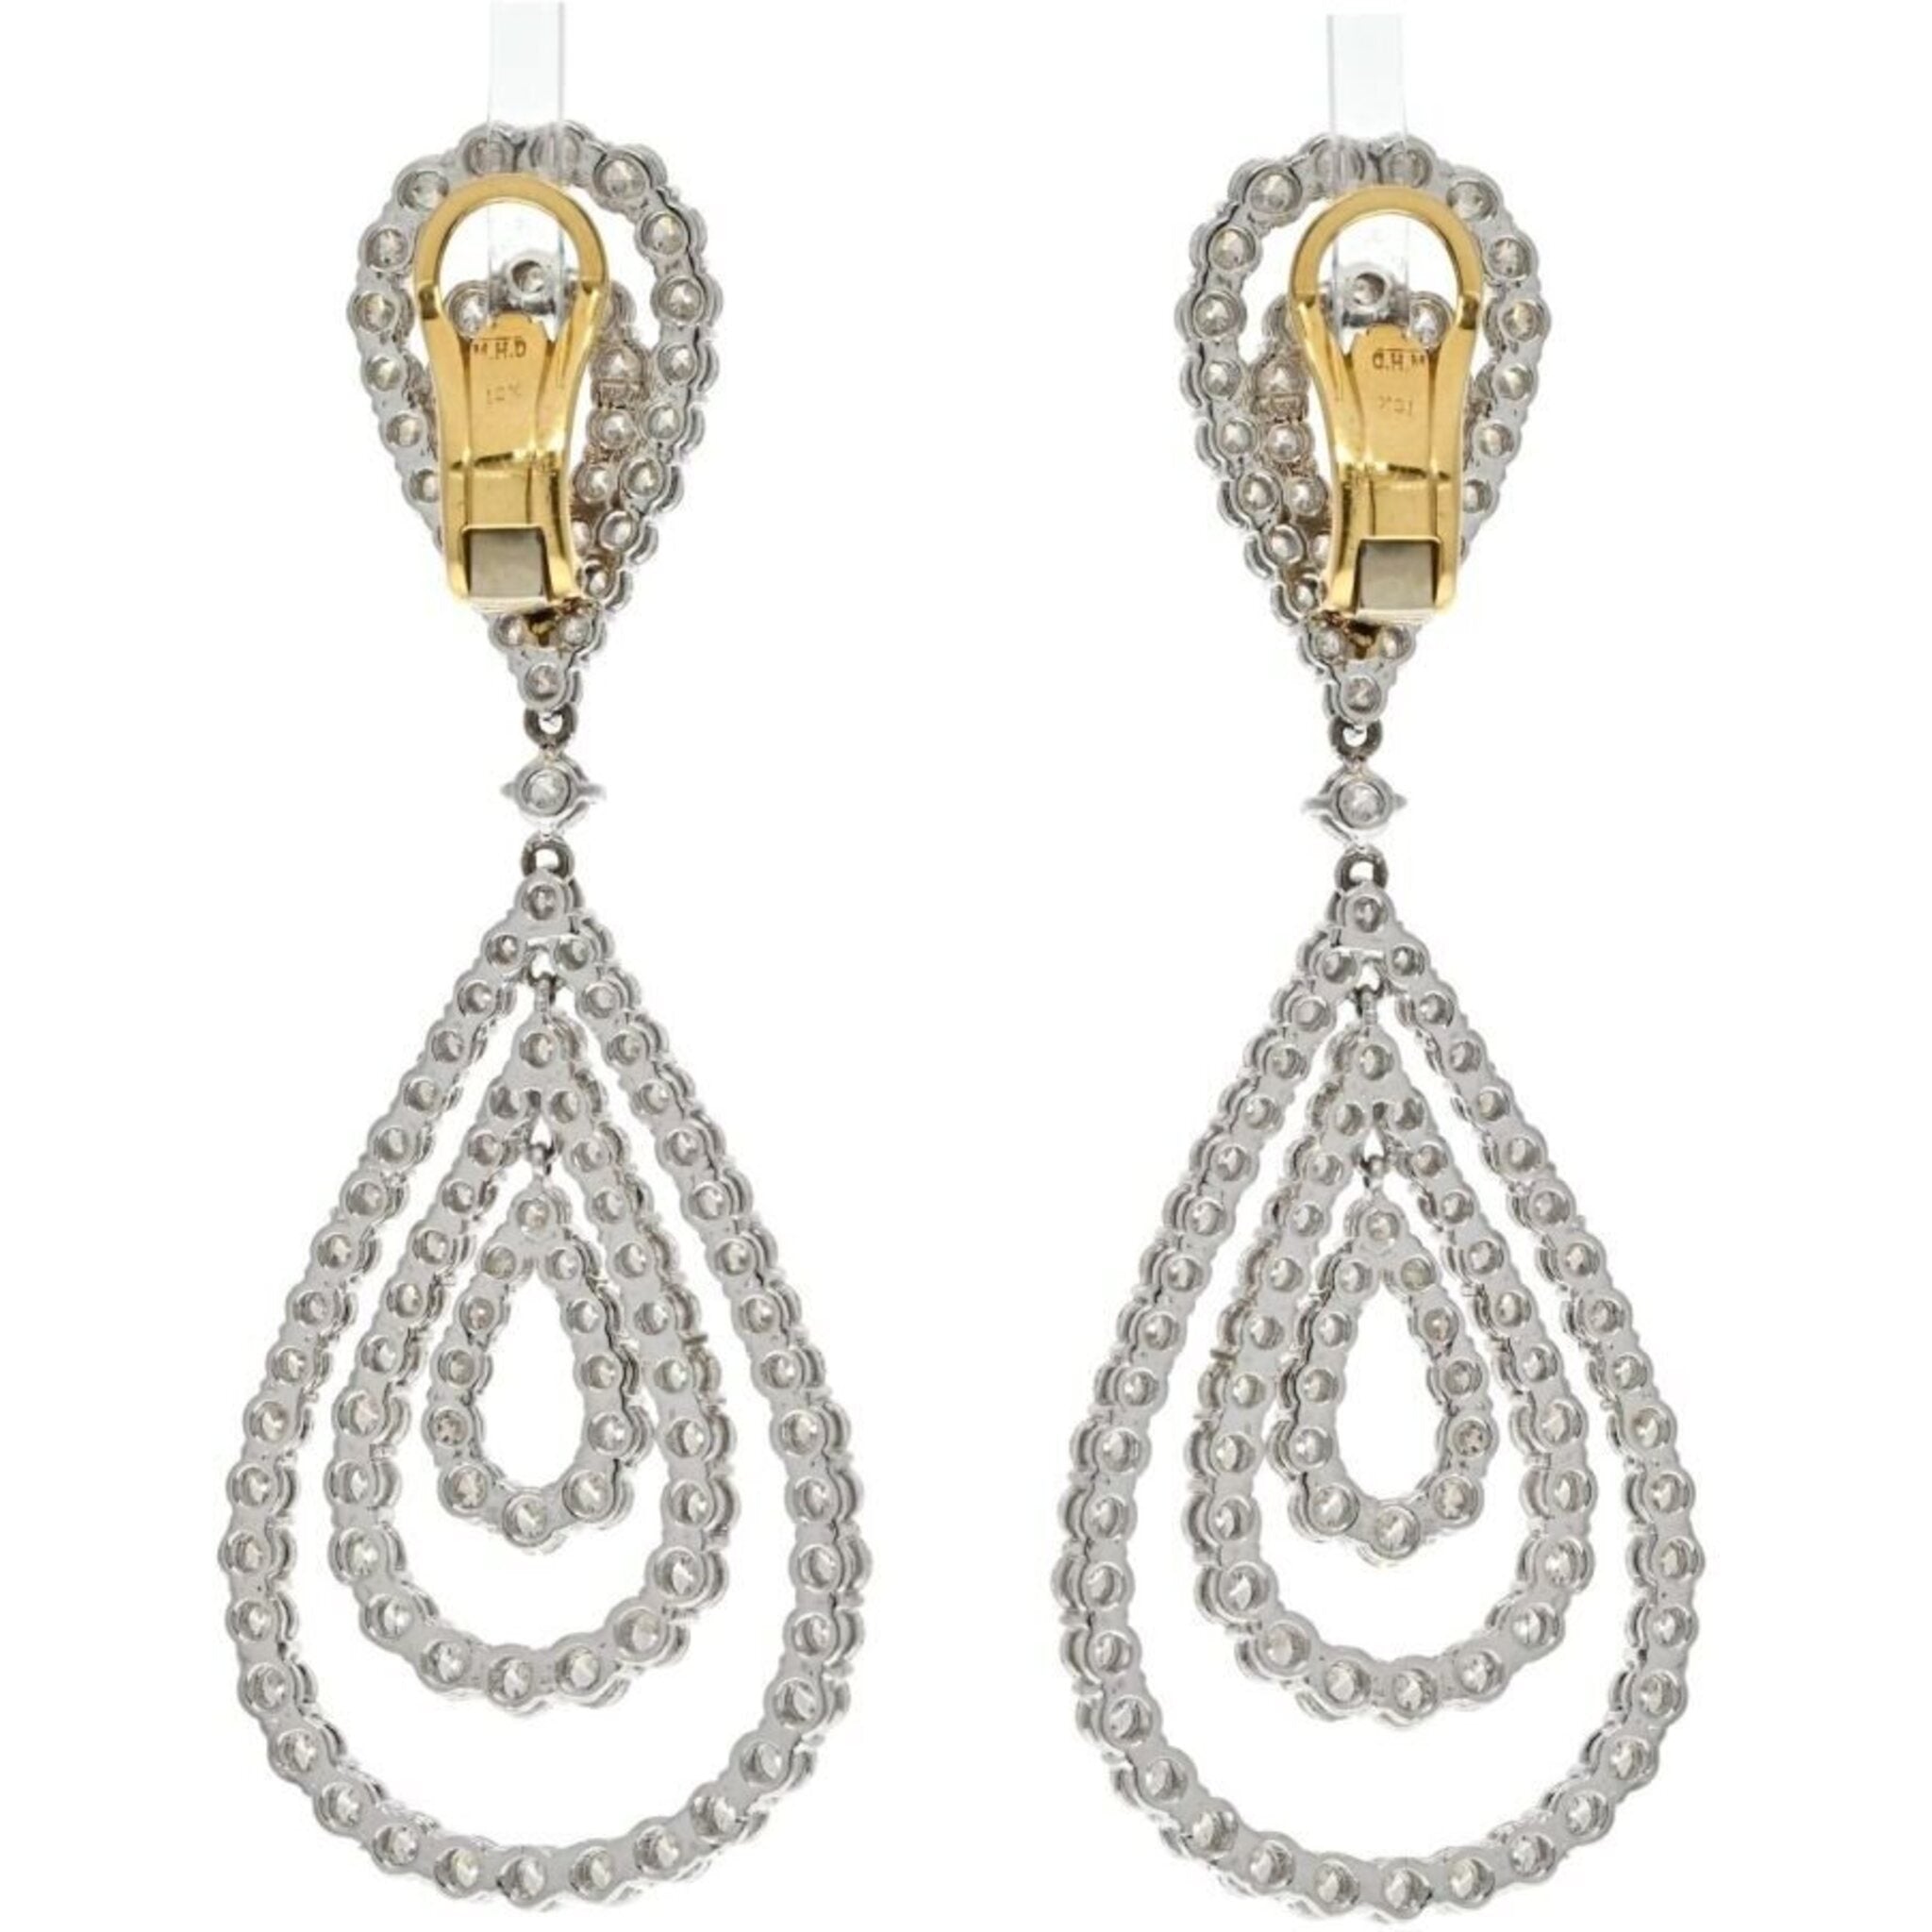 Cartier] Cartier Studs about 0.5ct earrings K18 Yellow Gold x Diamond Men's  Earrings SA rank – KYOTO NISHIKINO